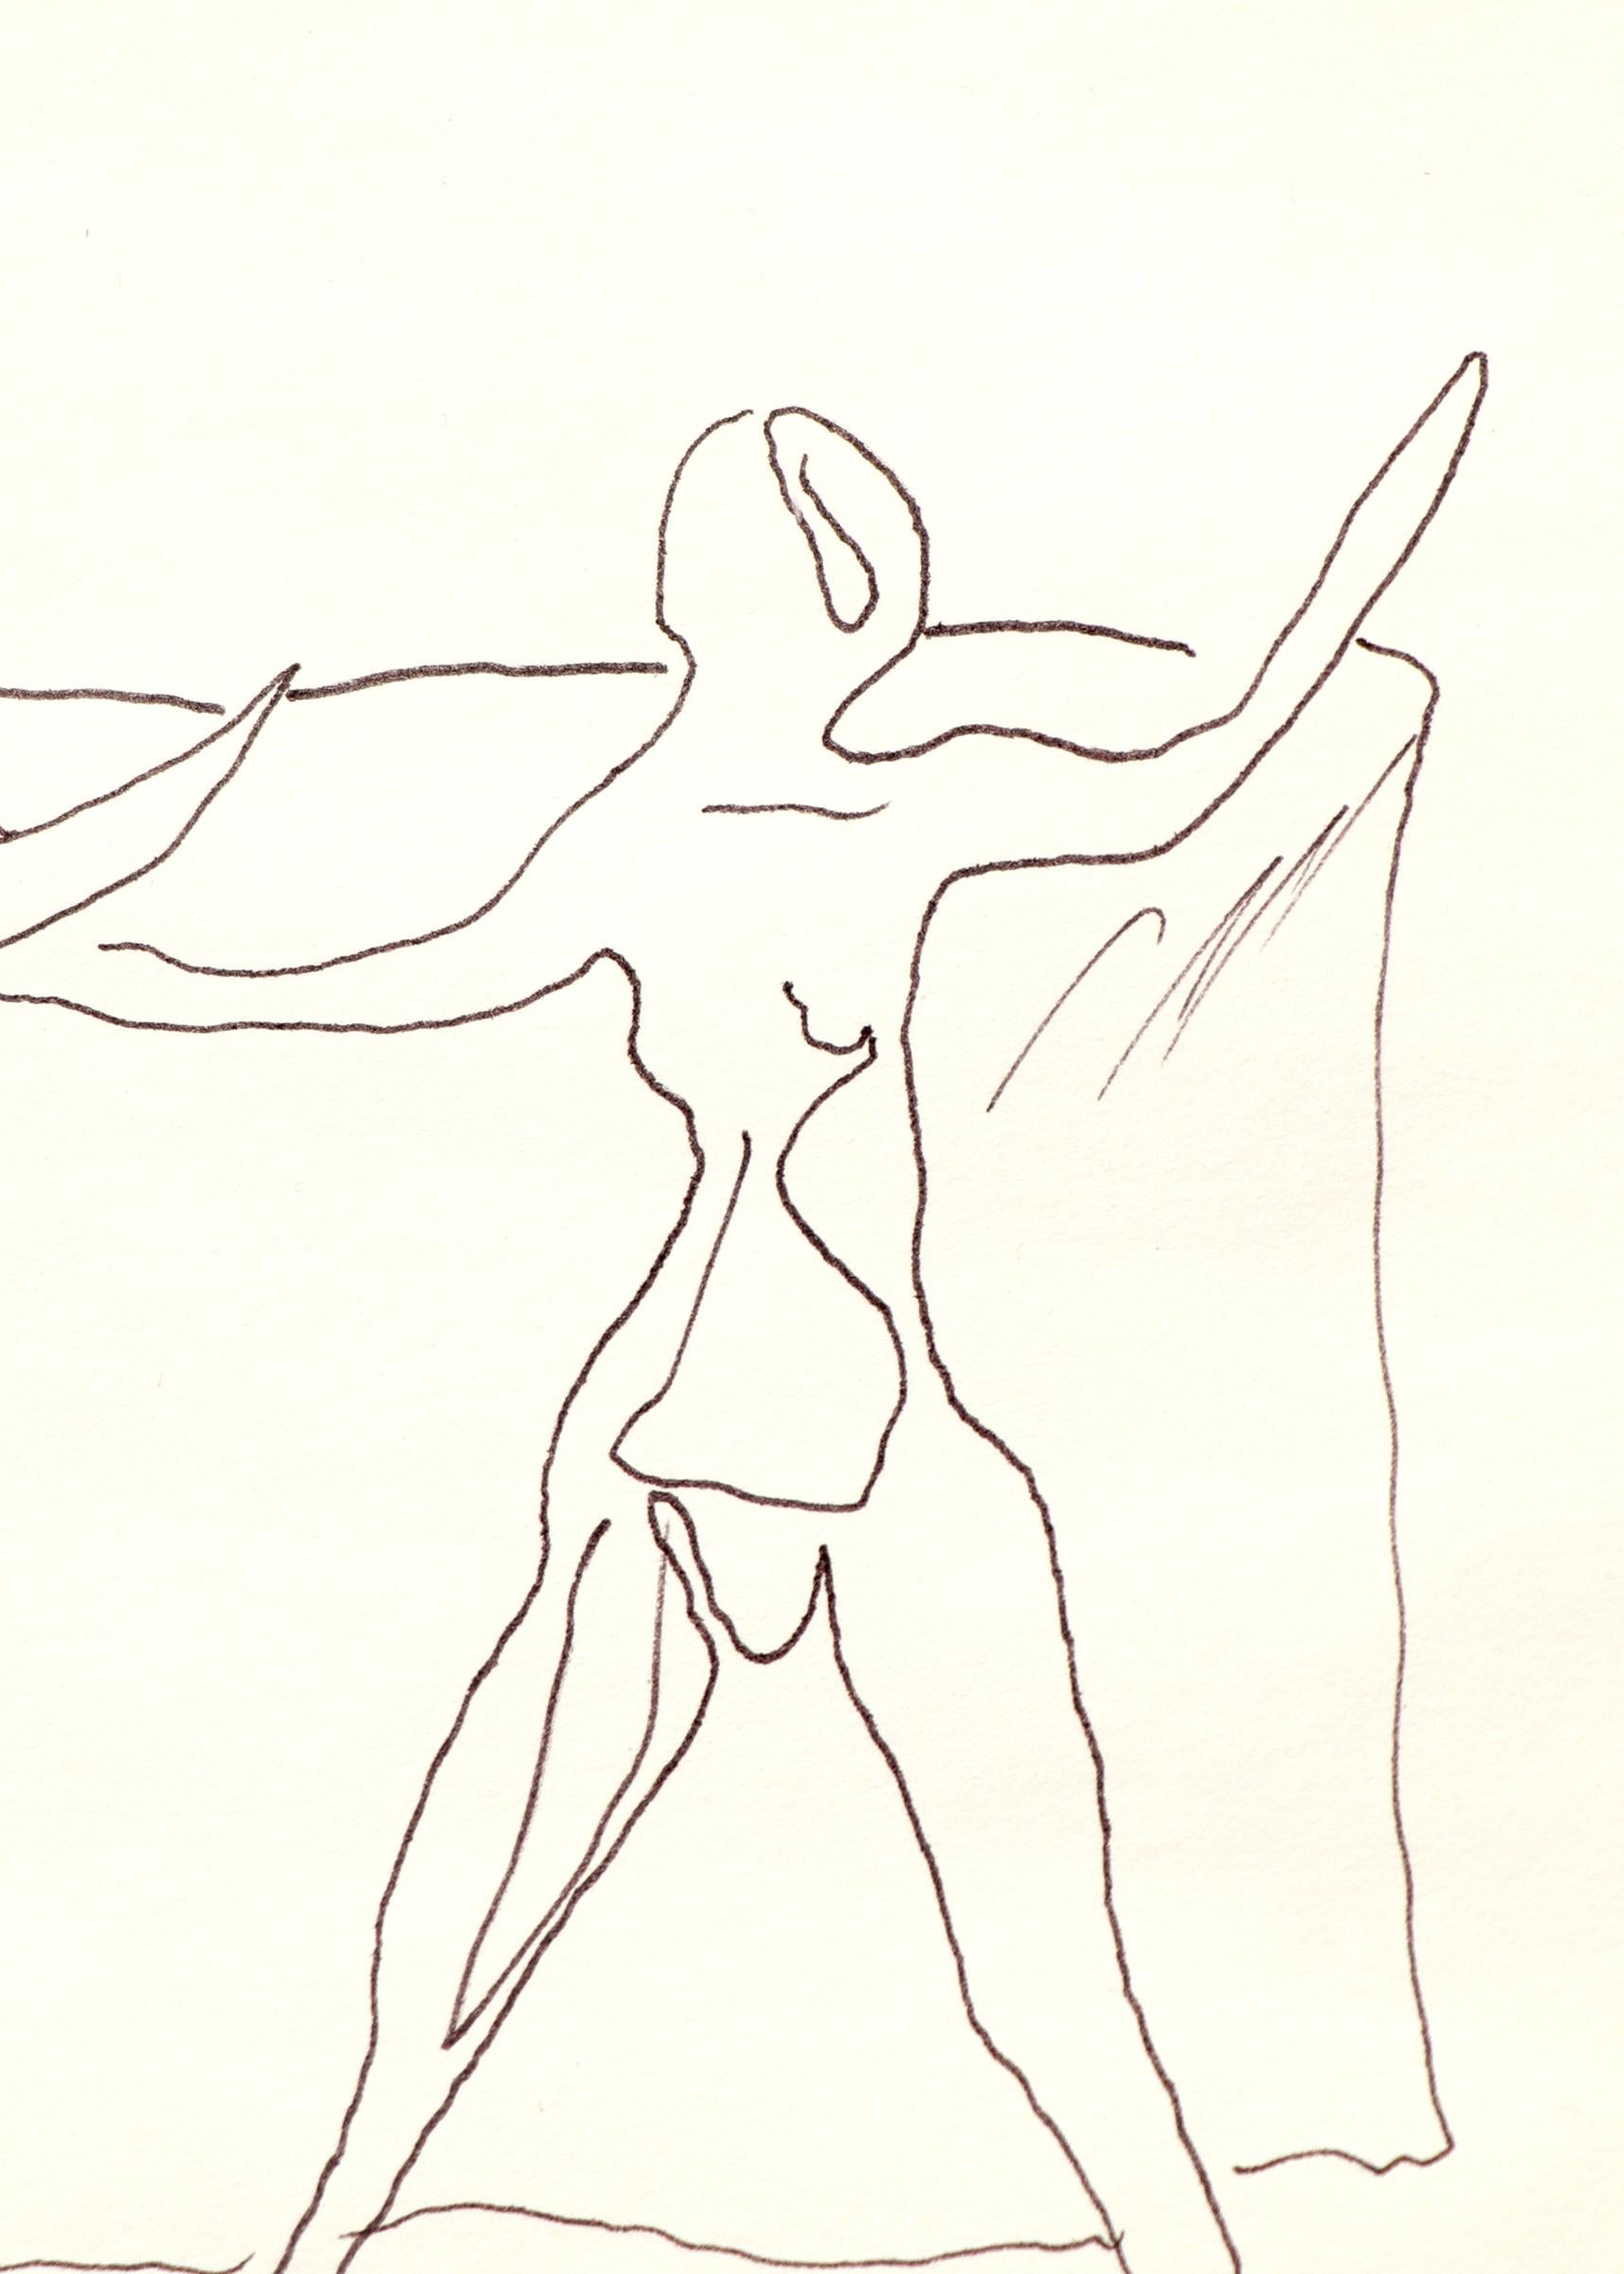 Untitled (Two Figures) ist eine Feder auf Papier Zeichnung von Edgar Britton (1901-1982). Die Außenmaße des in einem schwarzen Rahmen präsentierten Bildes betragen 13 ⅝ x 16 ⅝ x 1 Zoll. Das Bild ist 9 x 12 Zoll groß.

Die Zeichnung ist in sehr gutem